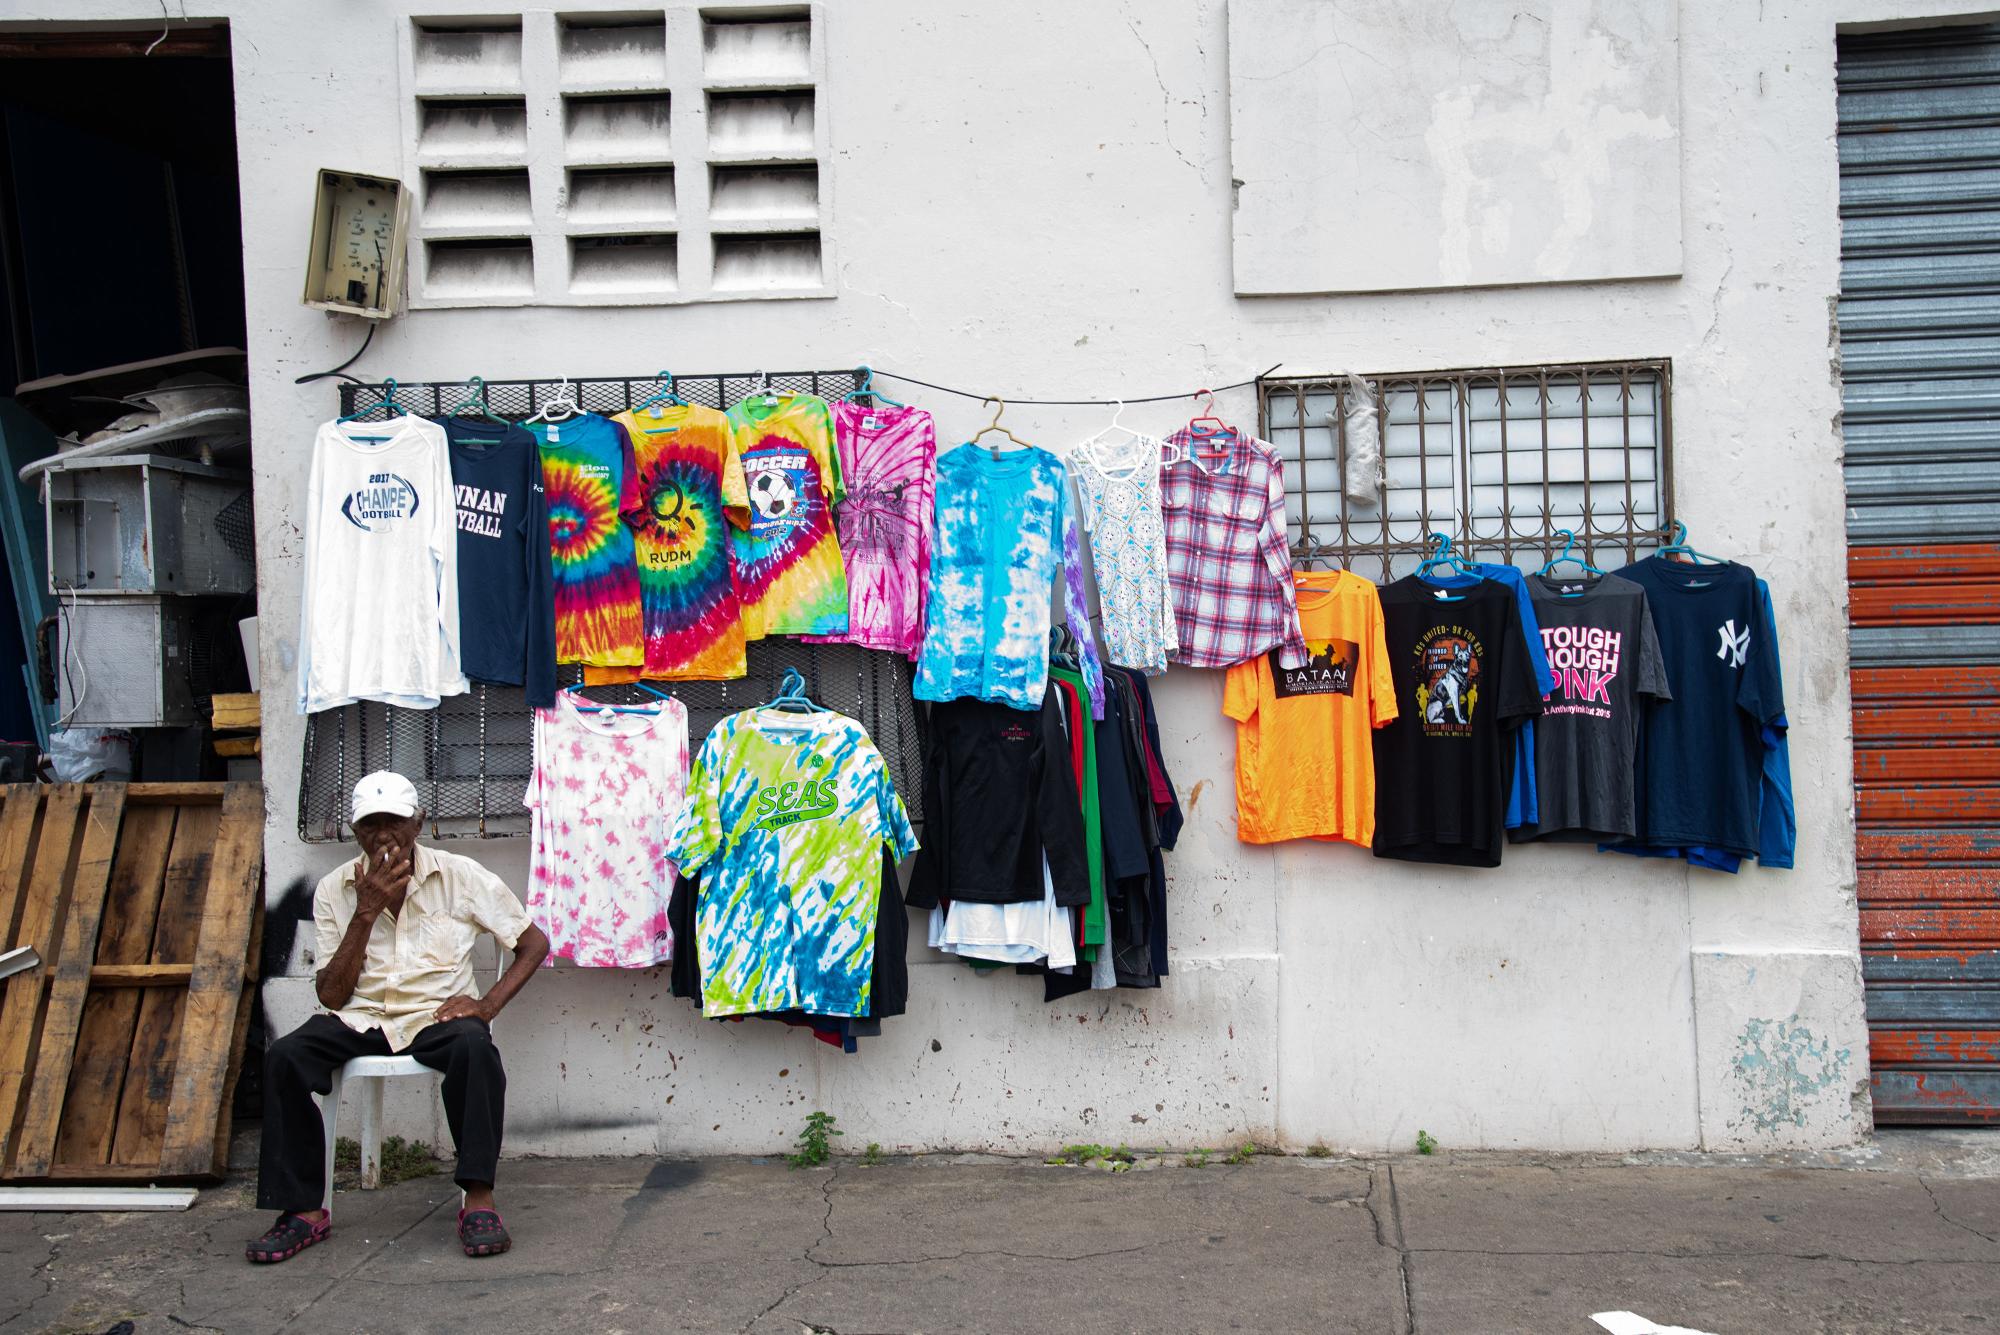 La ropa usada es una de las mercancías más comunes en manos de los comerciantes informales. (Foto: Dania Acevedo)